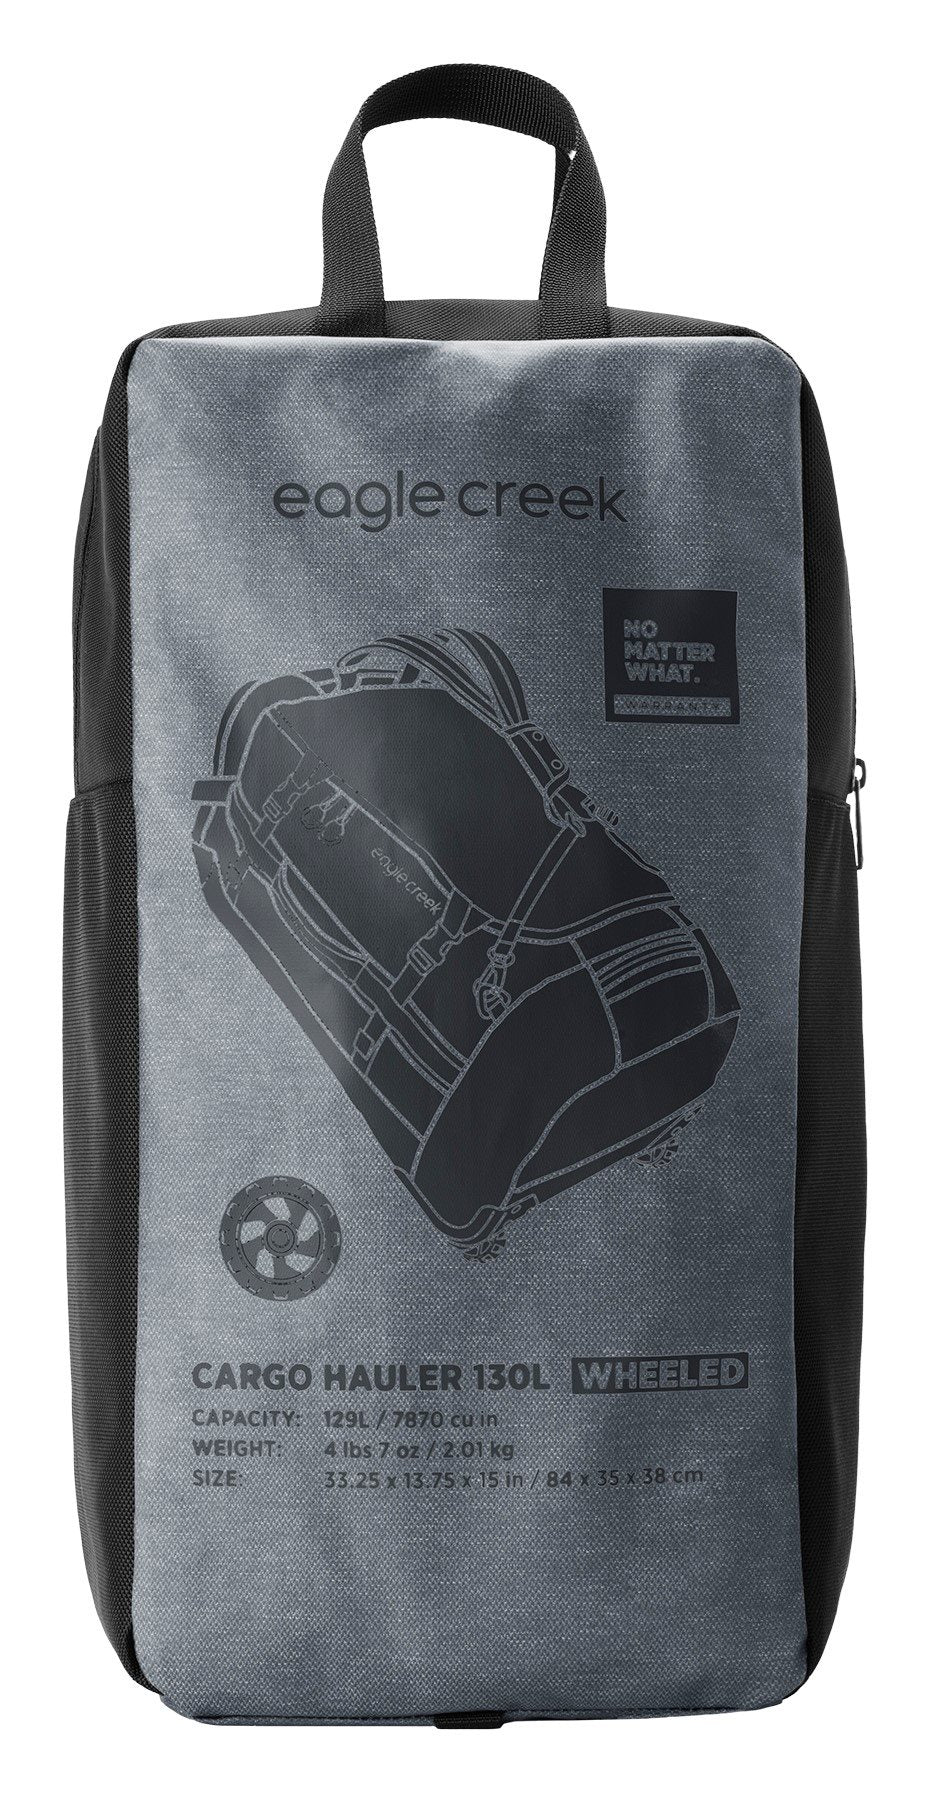 Eagle Creek Cargo Hauler Wheeled Duffel - 130L - Charcoal Reistas - Reisartikelen-nl